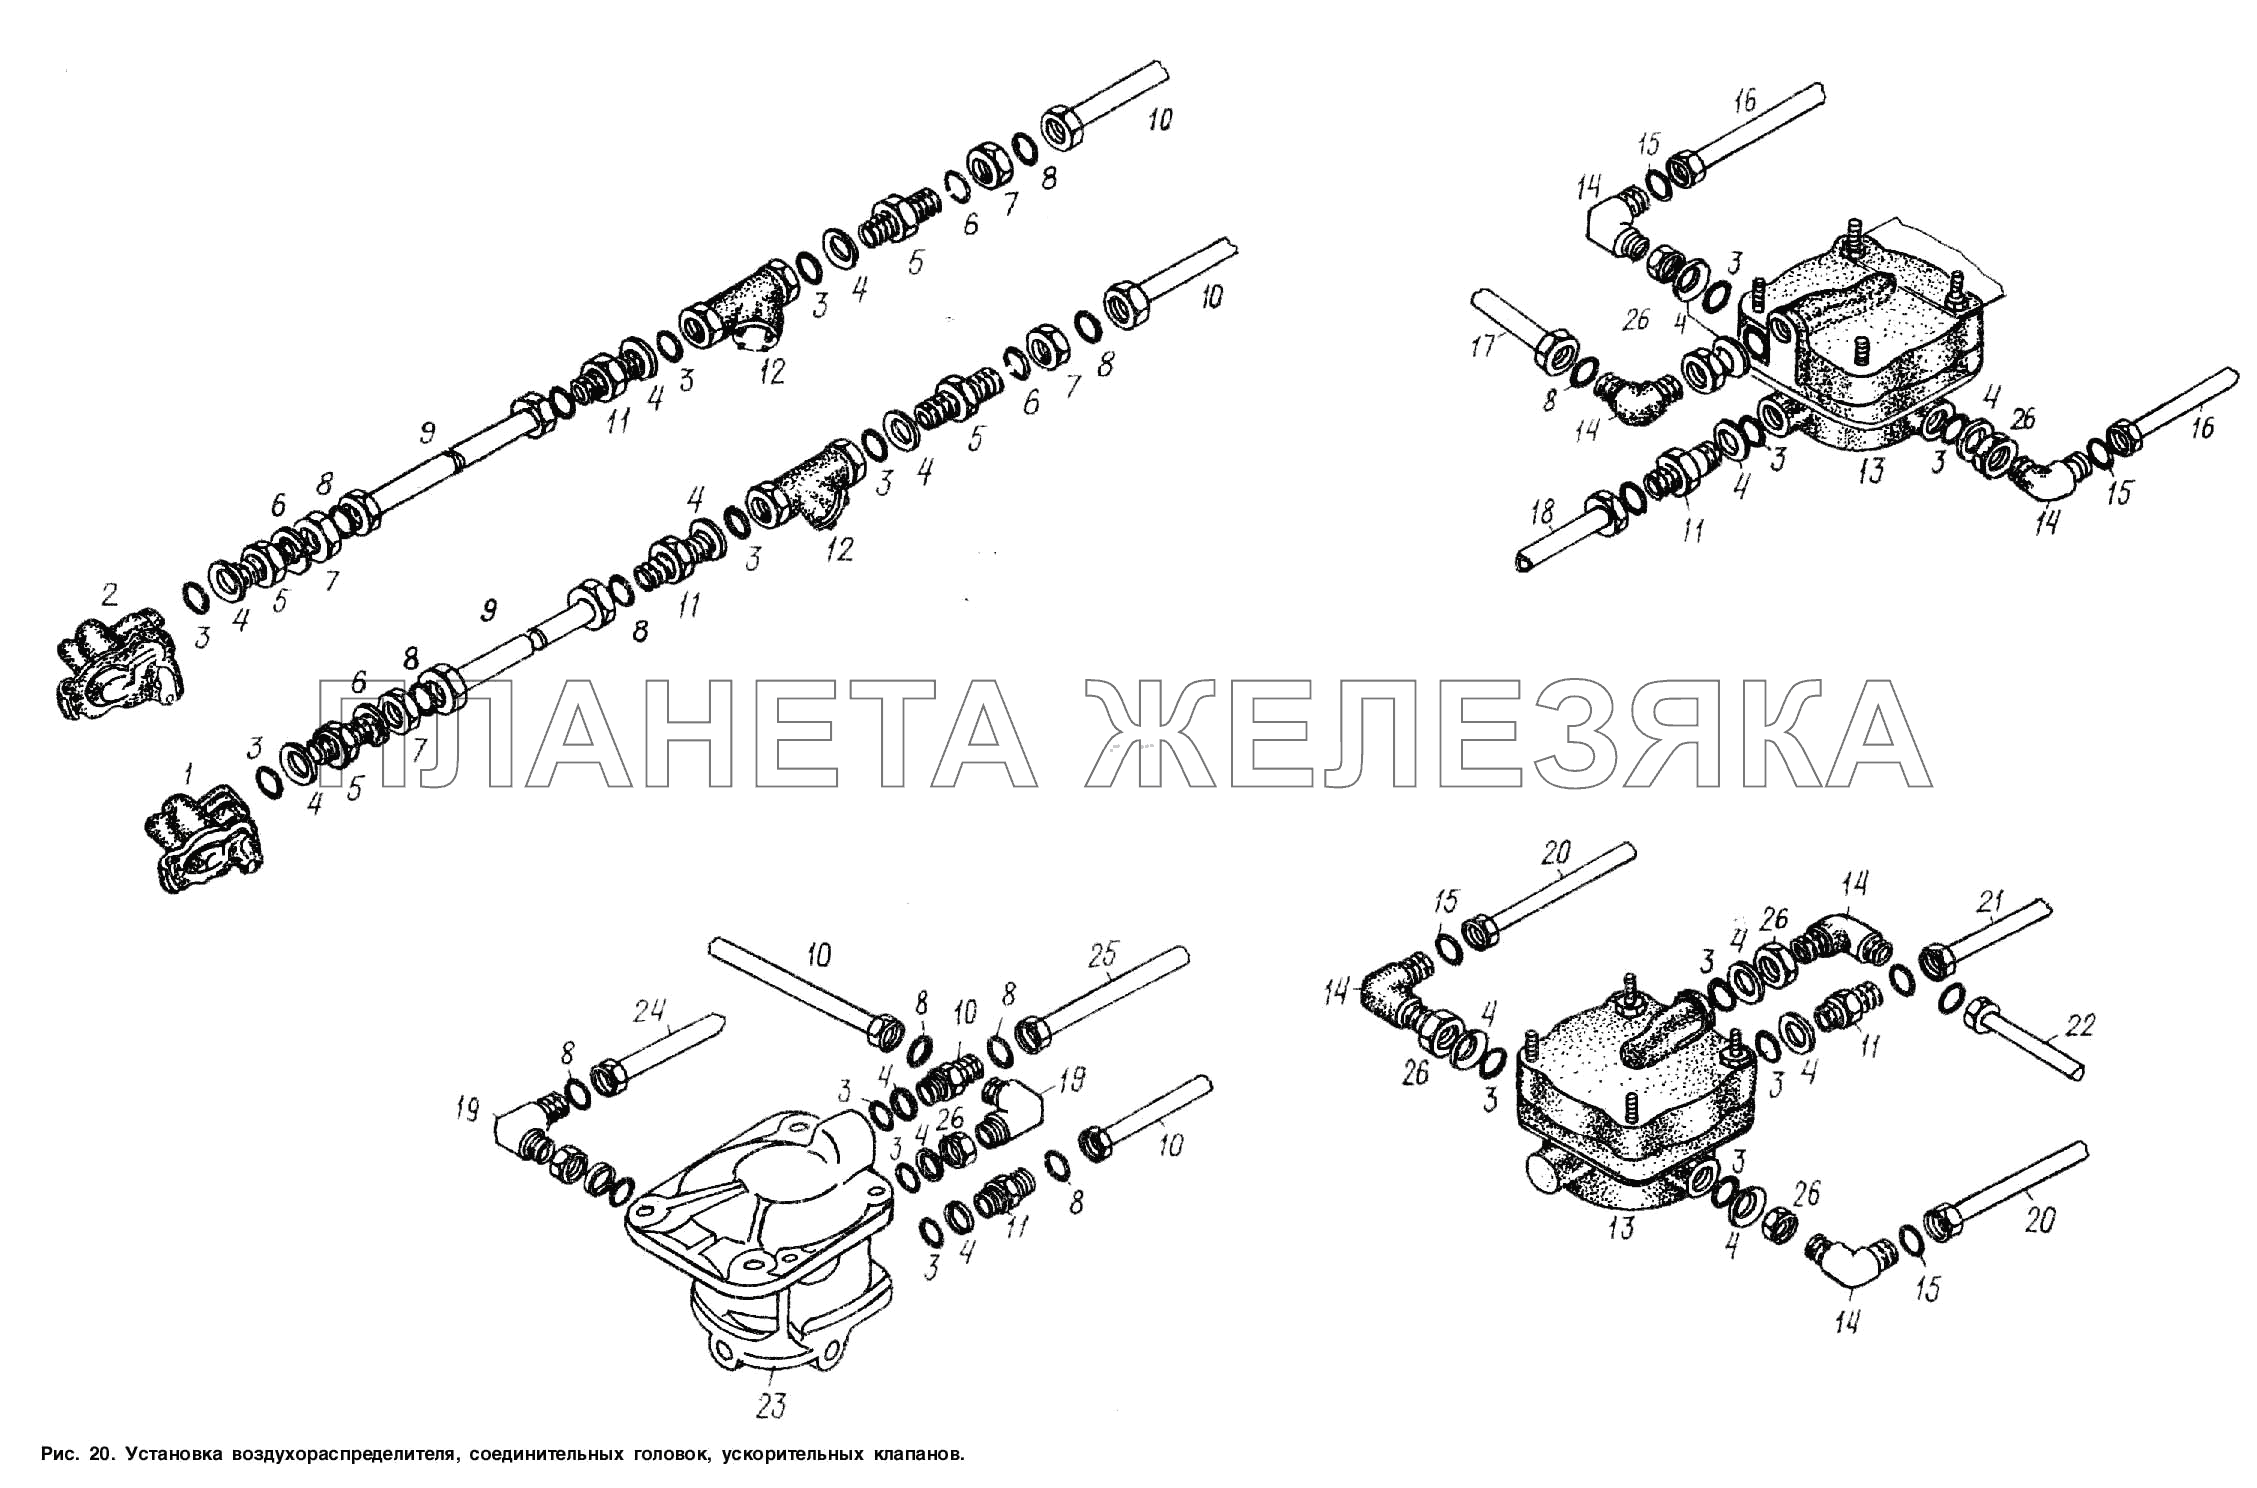 Установка воздухораспределителя, соединительных головок, ускорительных клапанов МАЗ-938662